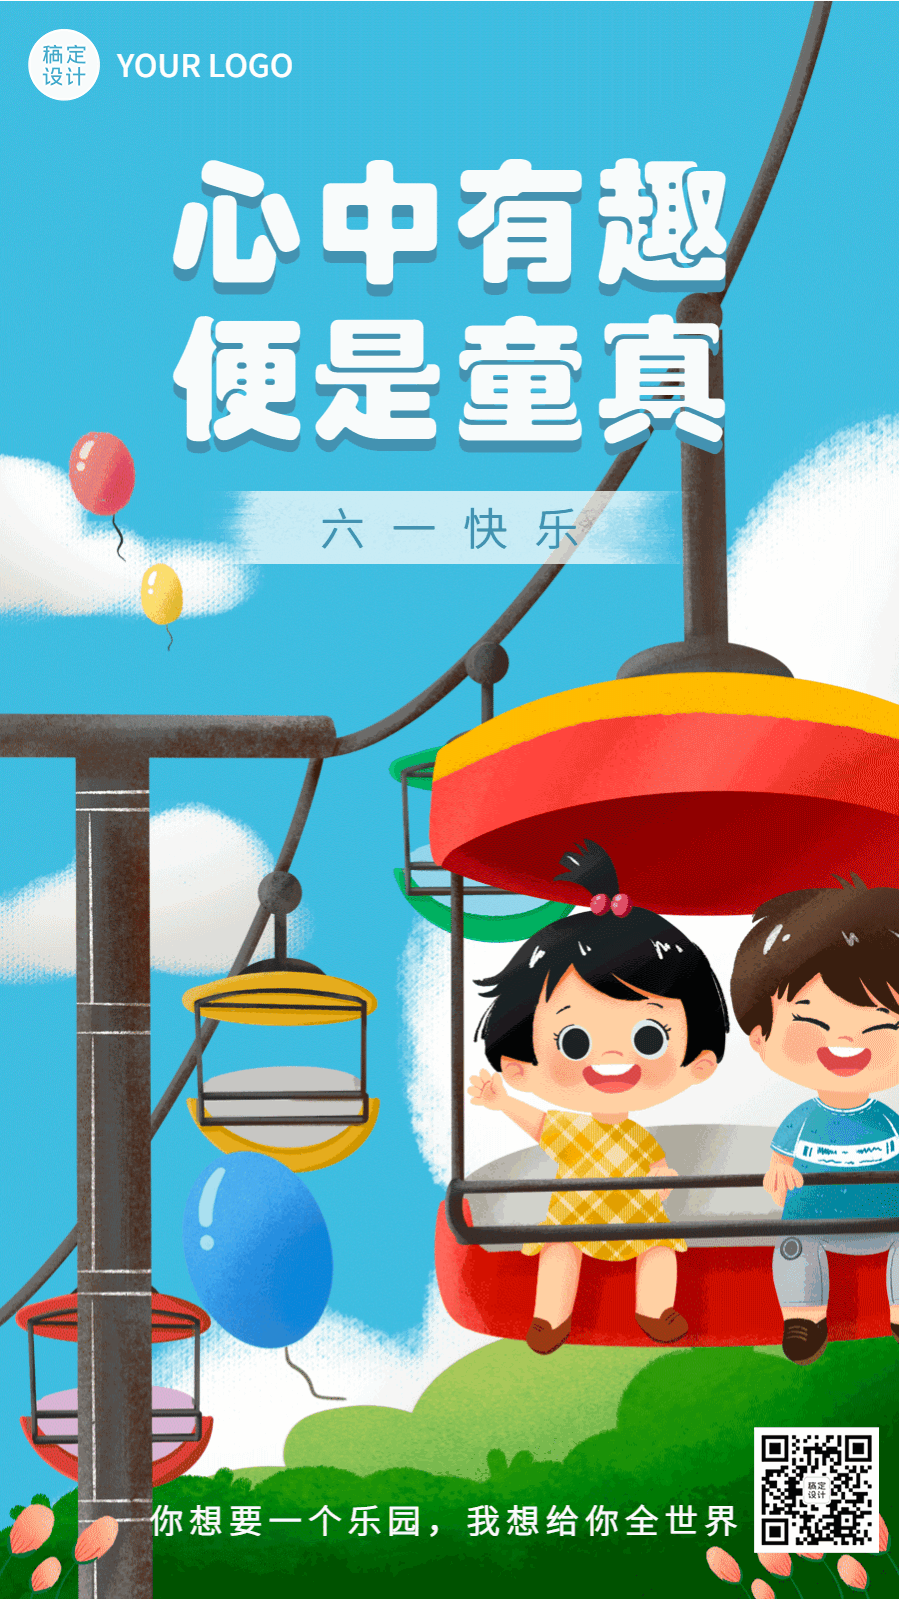 儿童节节日祝福插画动态海报预览效果